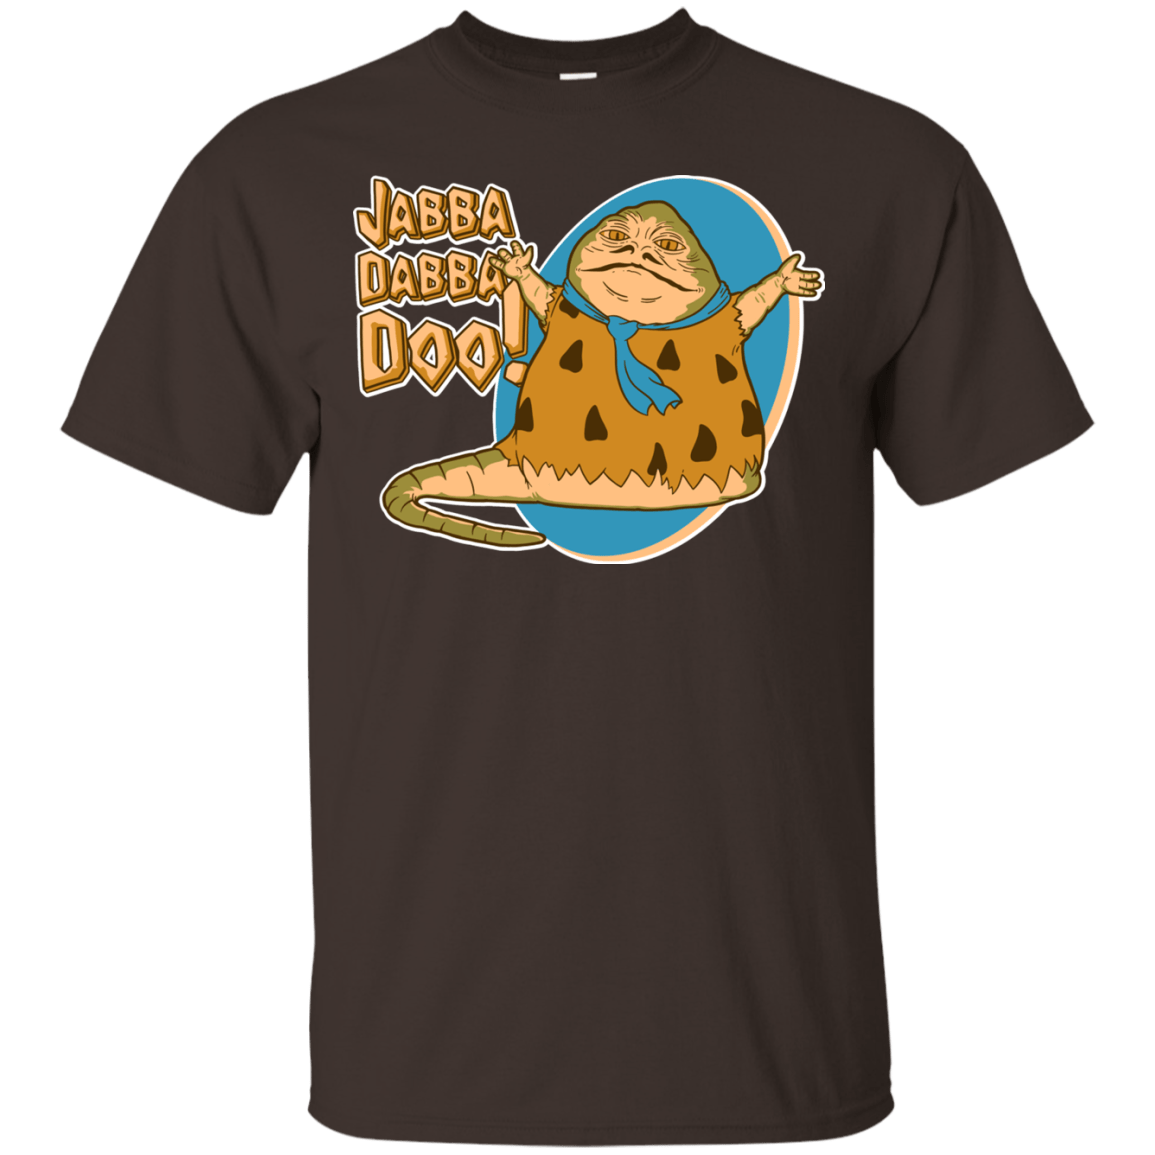 T-Shirts Dark Chocolate / S Jabba Dabba Doo T-Shirt